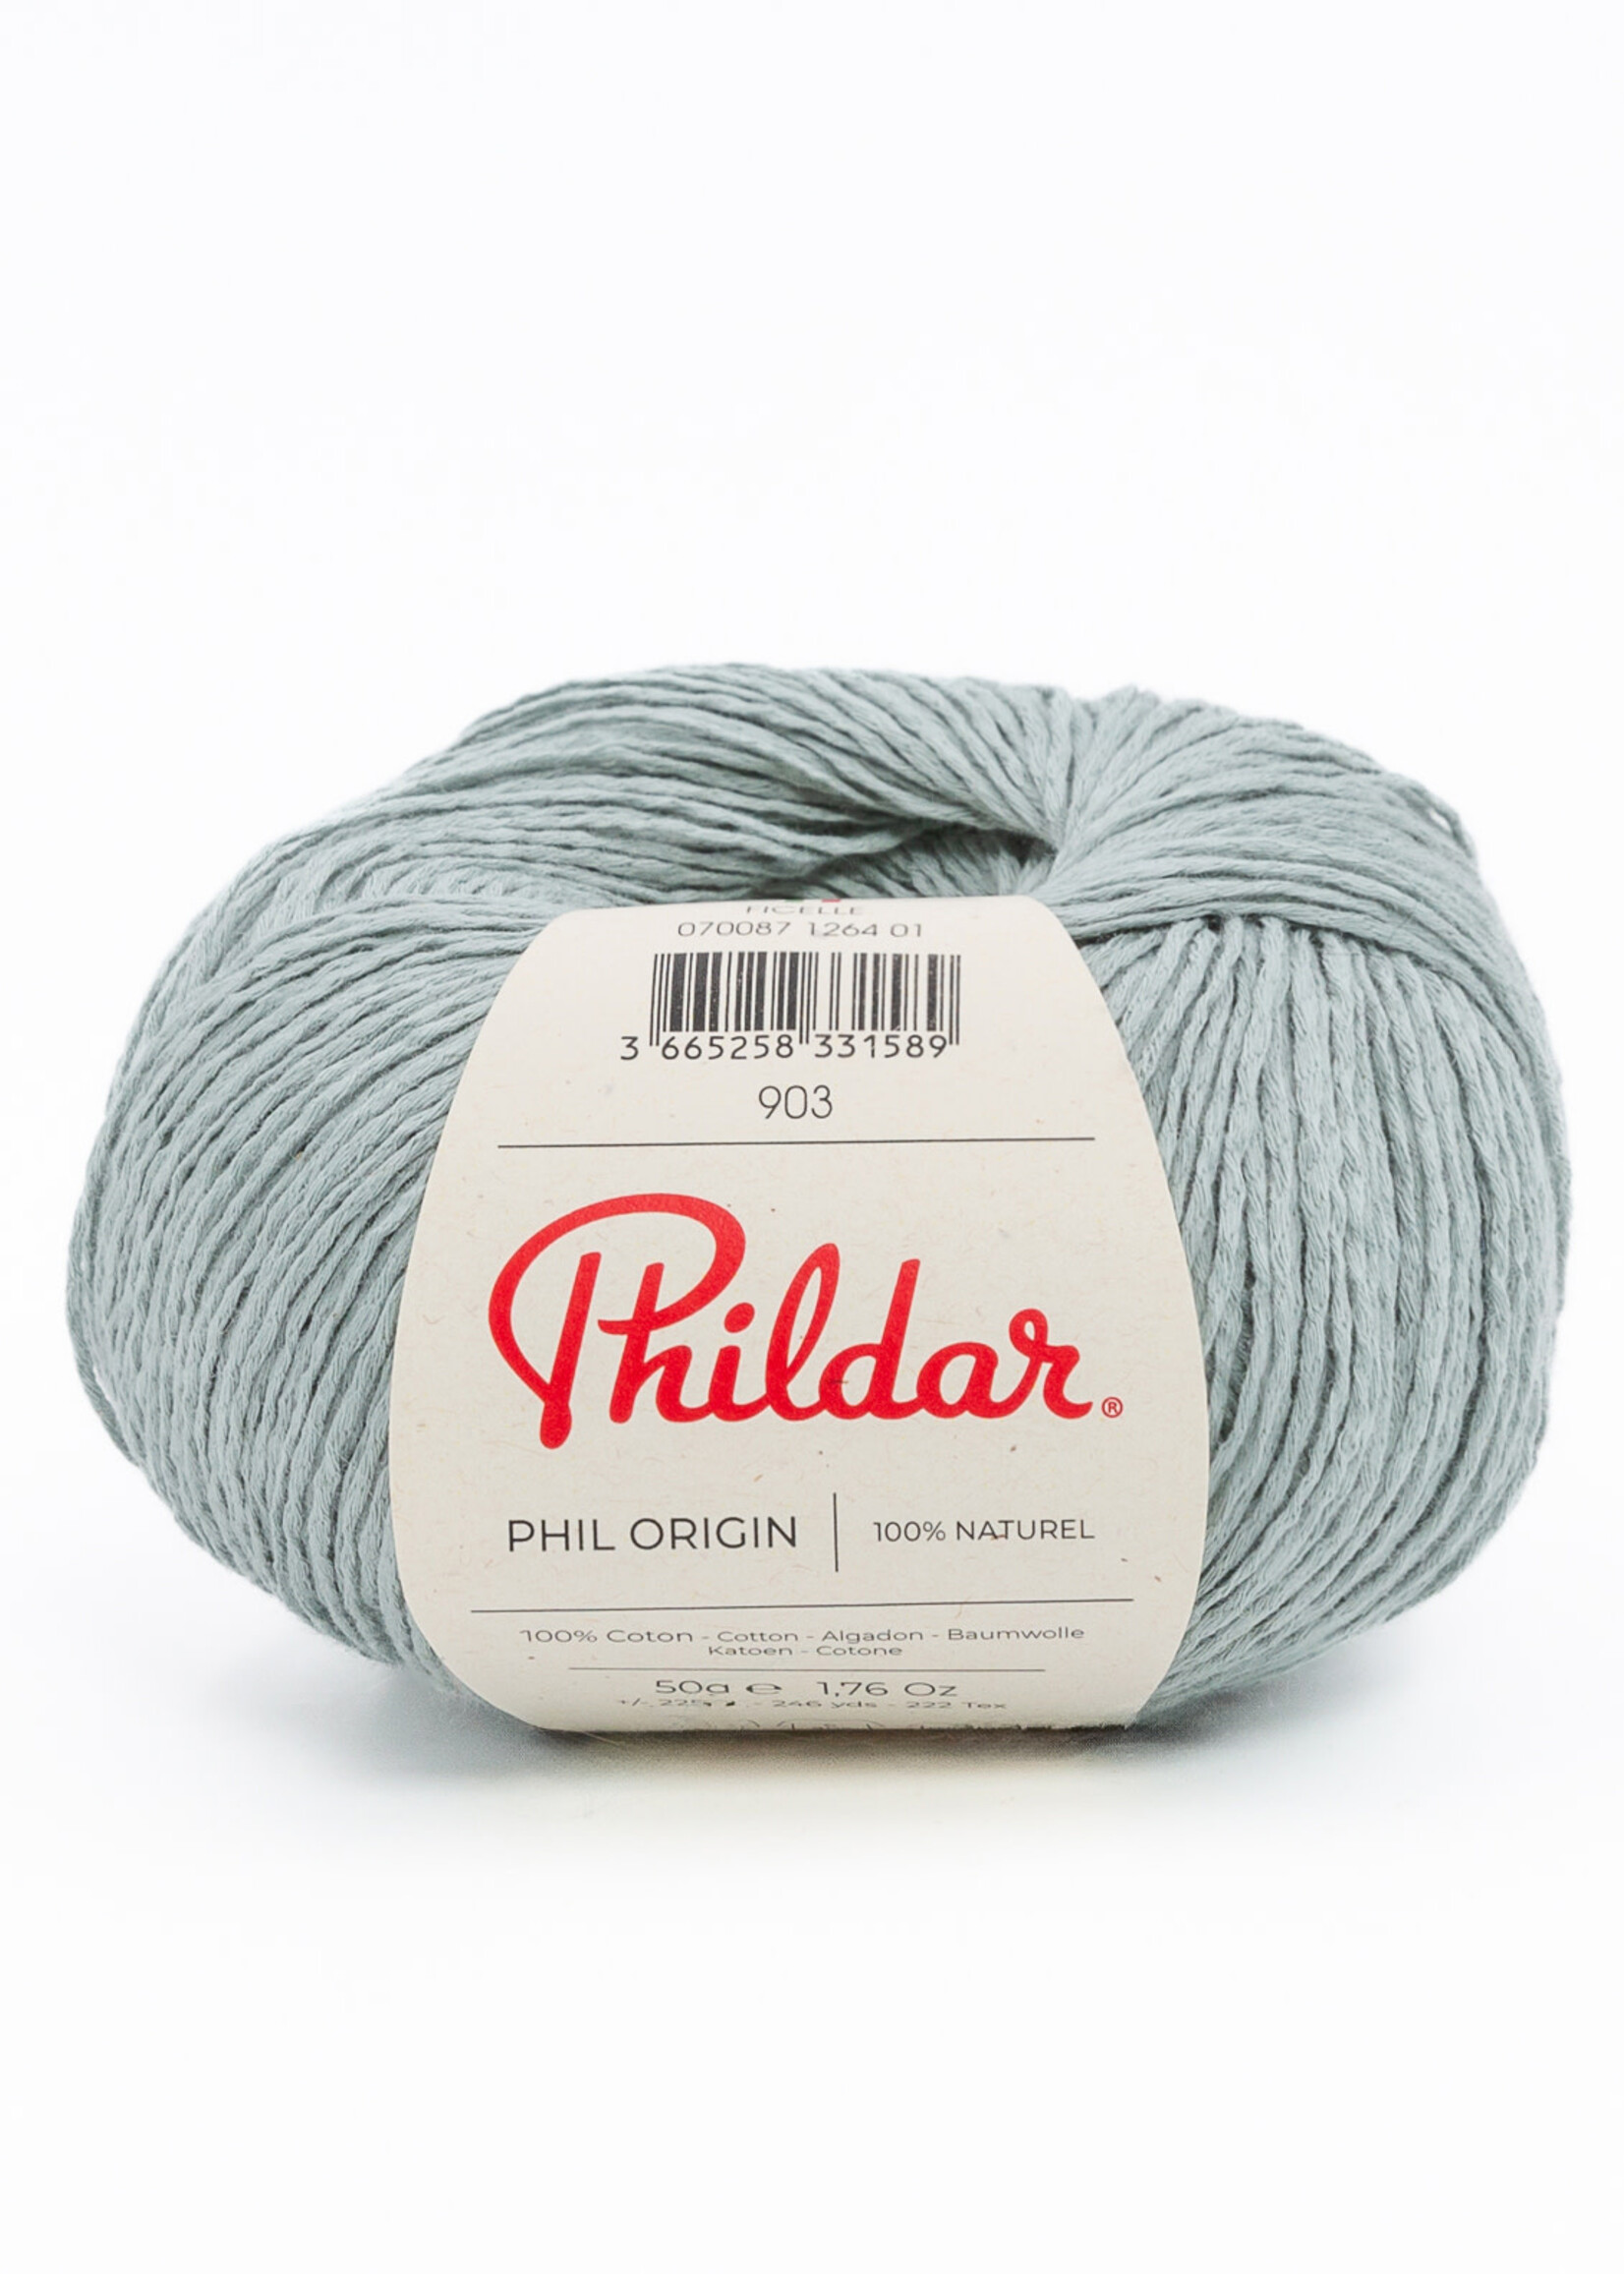 Phildar Phil Origin - Phildar -2435 amande